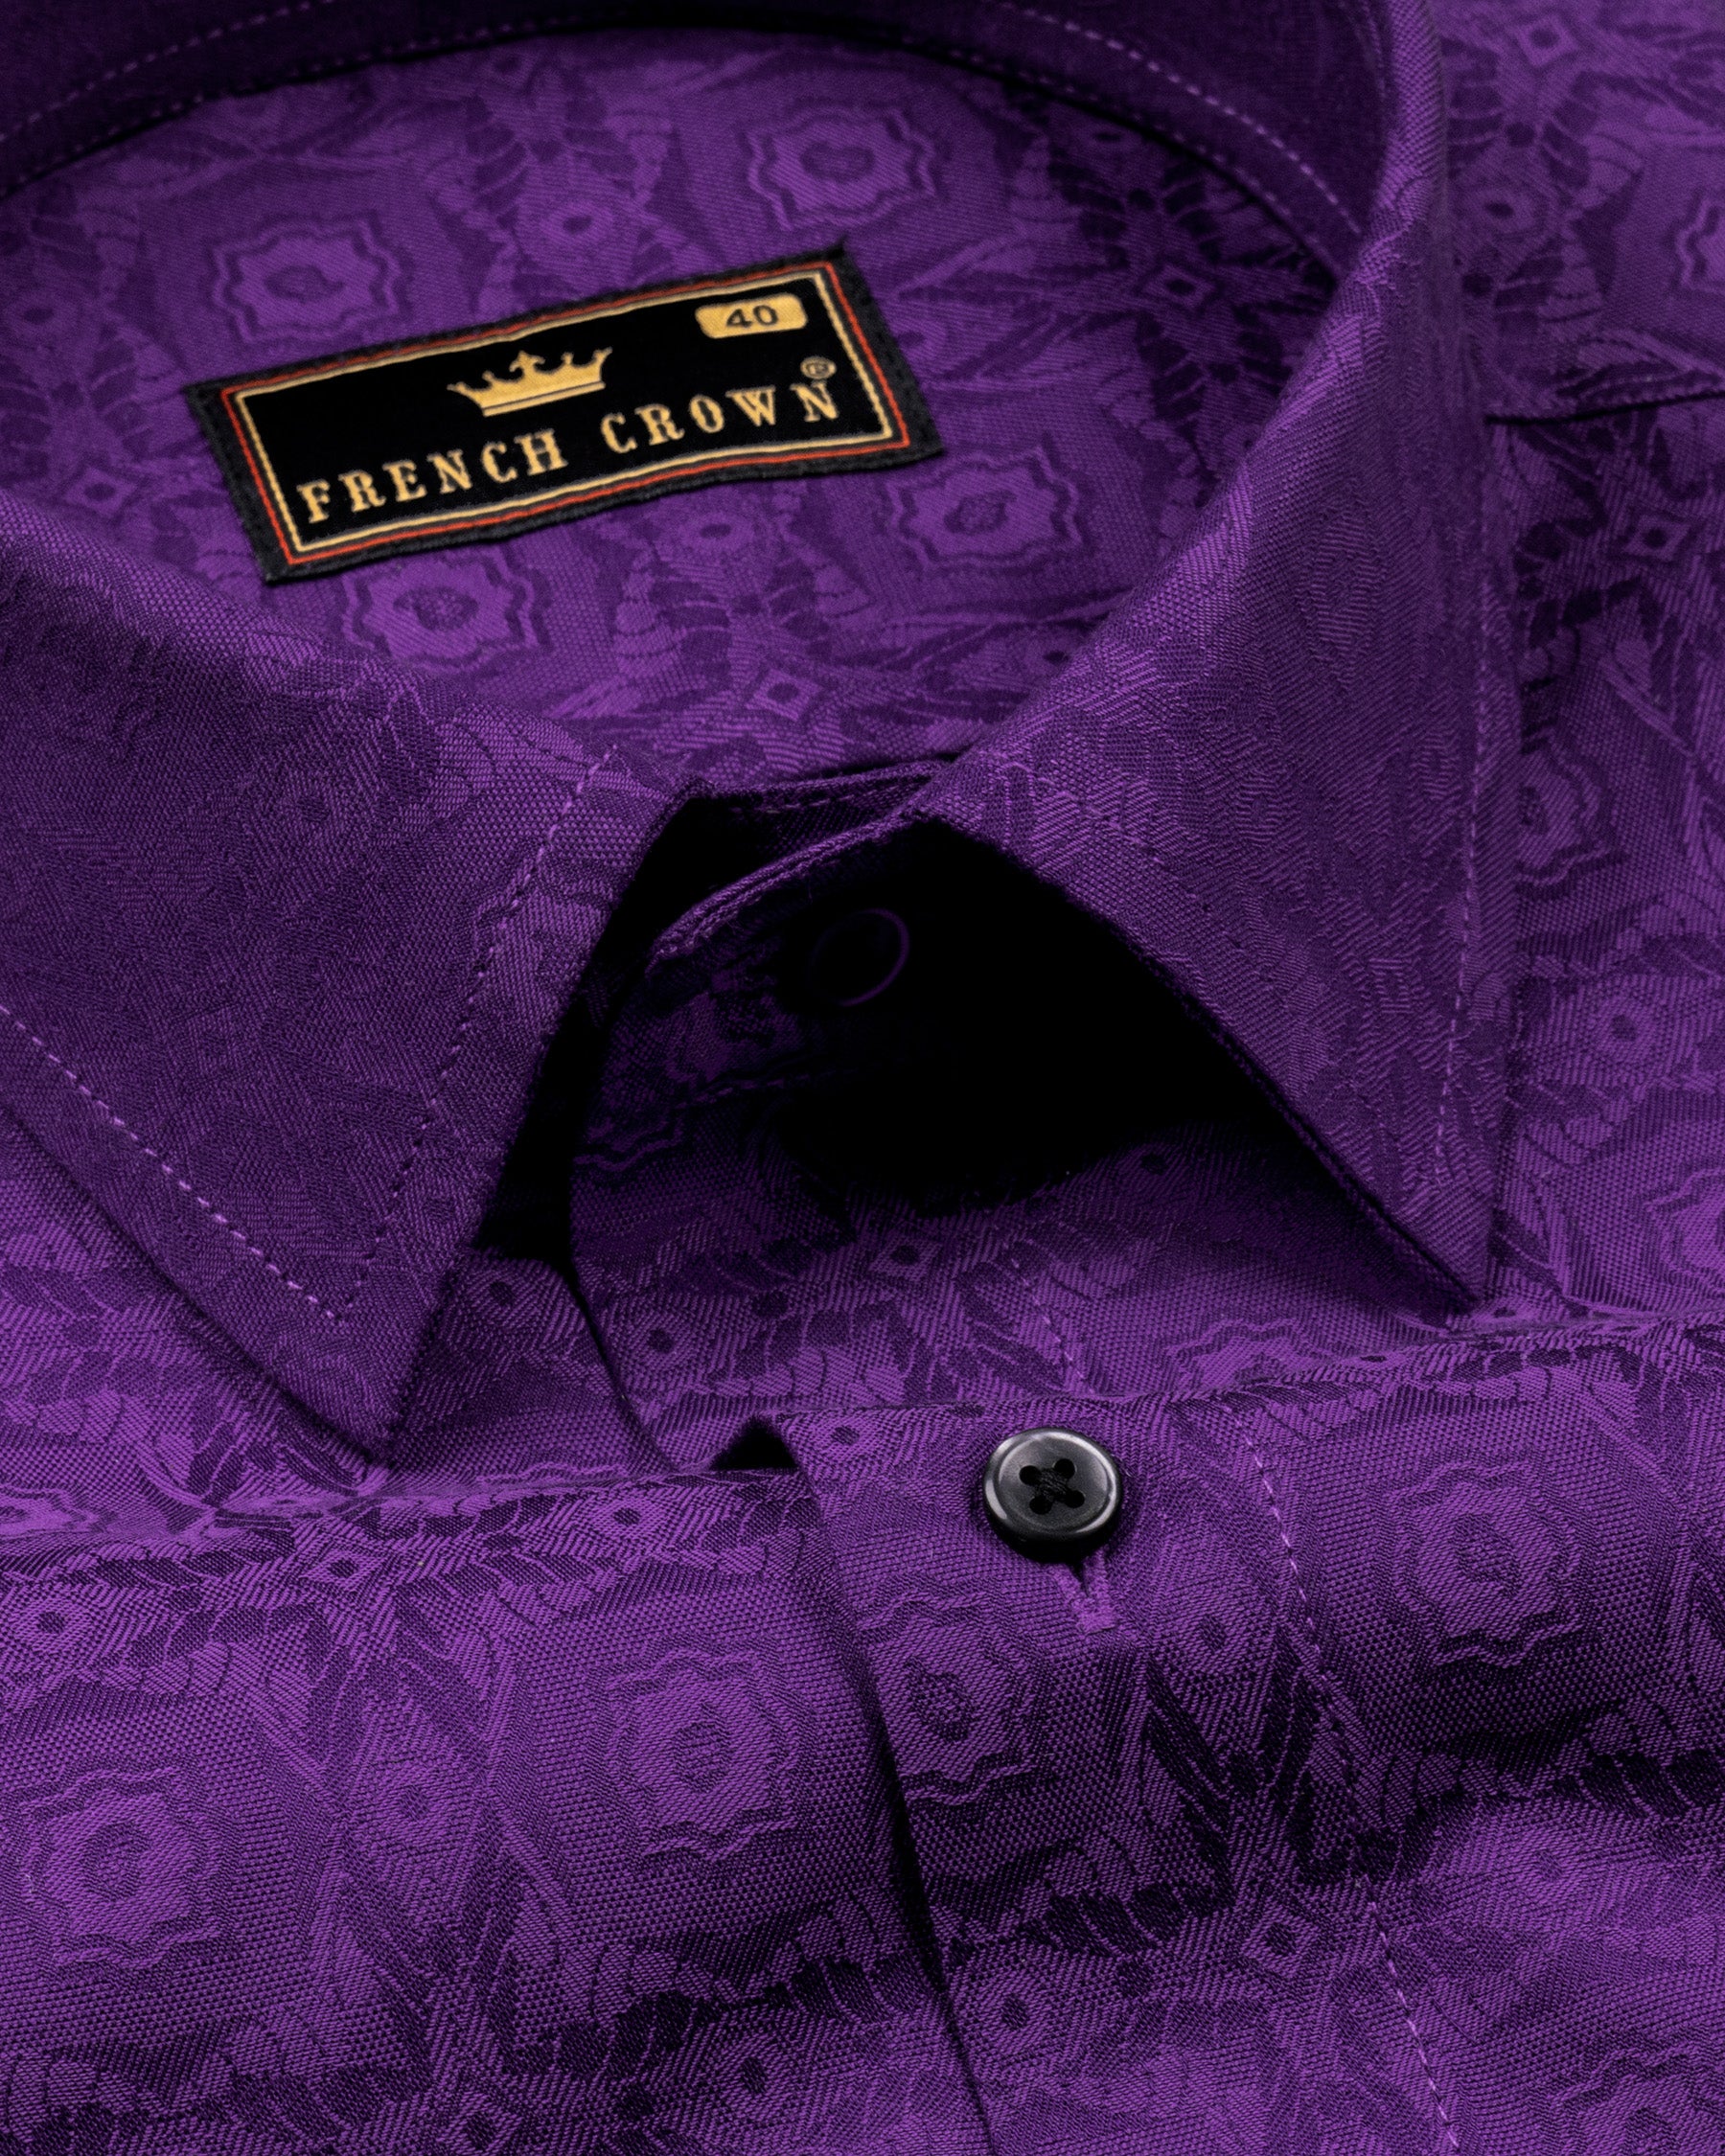 Vivid Violet Geometric Jacquard Textured Super soft Premium Giza Cotton Shirt 4687-BLK-38, 4687-BLK-H-42, 4687-BLK-52, 4687-BLK-H-52, 4687-BLK-H-38, 4687-BLK-H-39, 4687-BLK-42, 4687-BLK-46, 4687-BLK-H-46, 4687-BLK-50, 4687-BLK-H-44, 4687-BLK-H-50, 4687-BLK-39, 4687-BLK-40, 4687-BLK-H-40, 4687-BLK-44, 4687-BLK-48, 4687-BLK-H-48